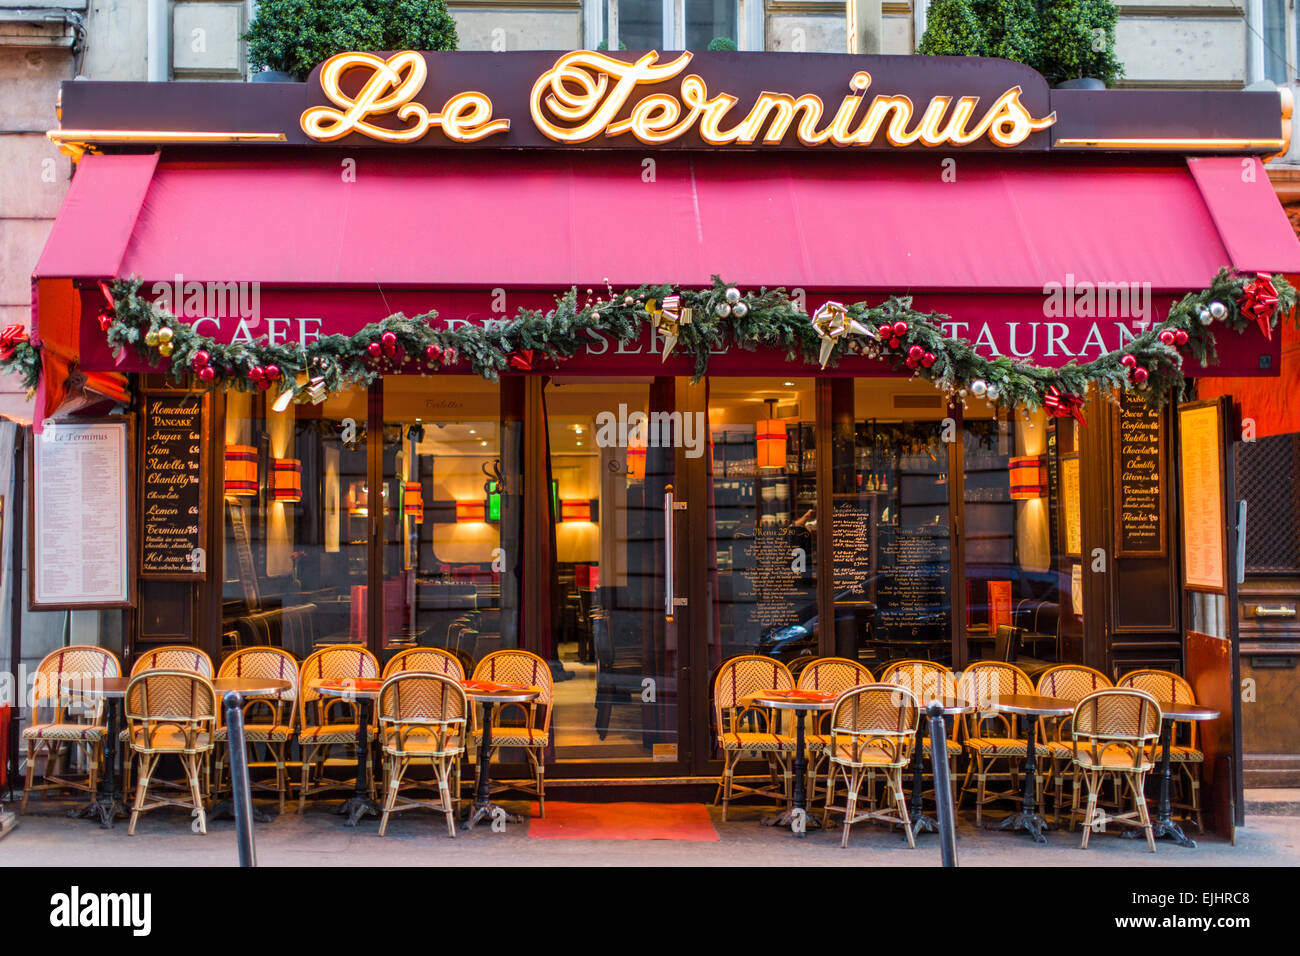 Cafe Bistro Le Terminus, Paris, France Banque D'Images